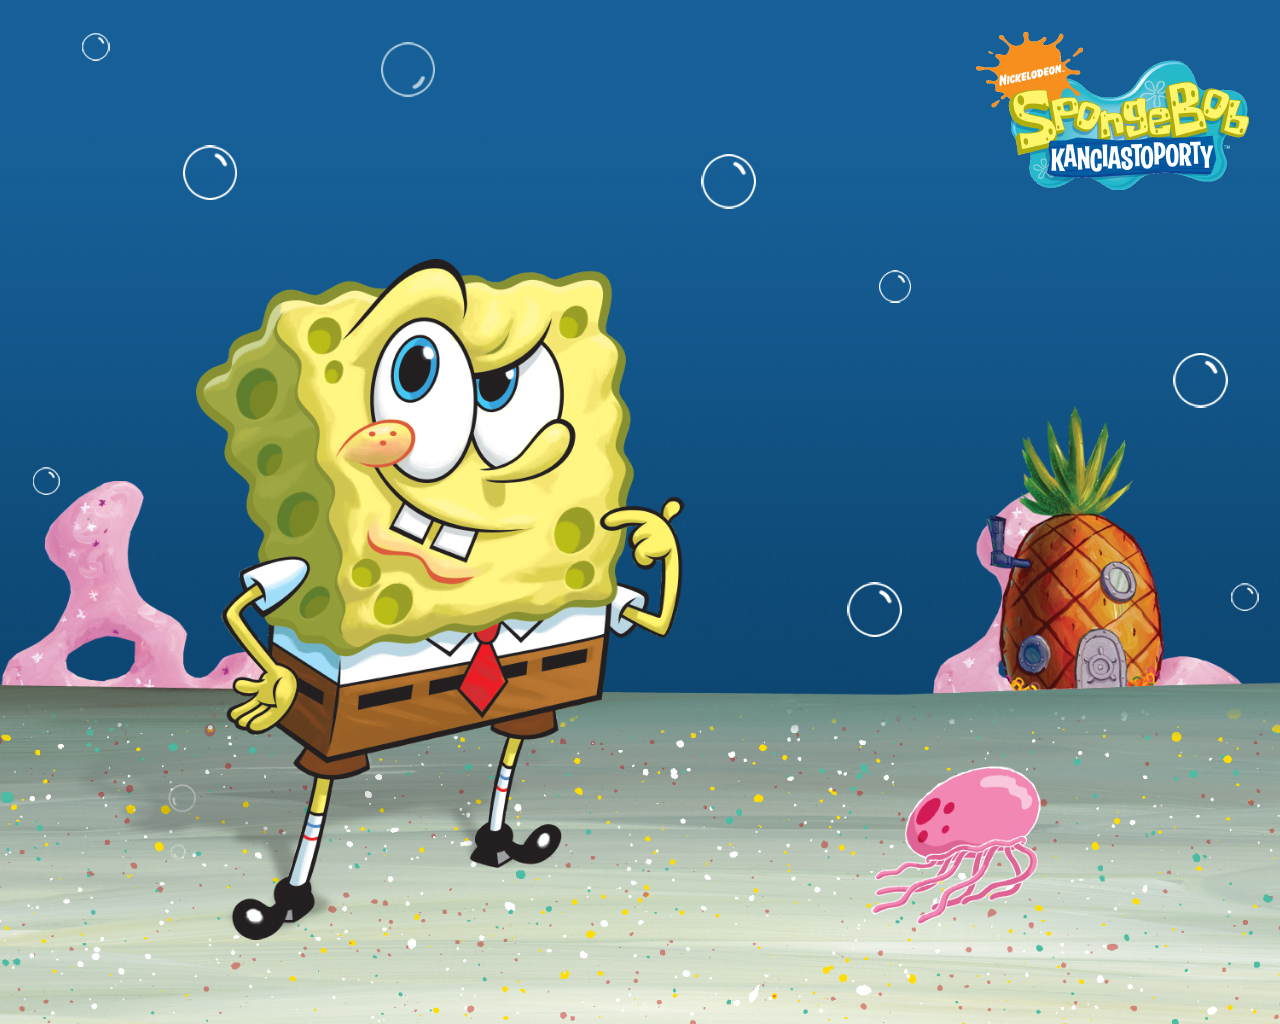 Spongebob スポンジボブ スクエアパンツ 壁紙 31312896 ファンポップ